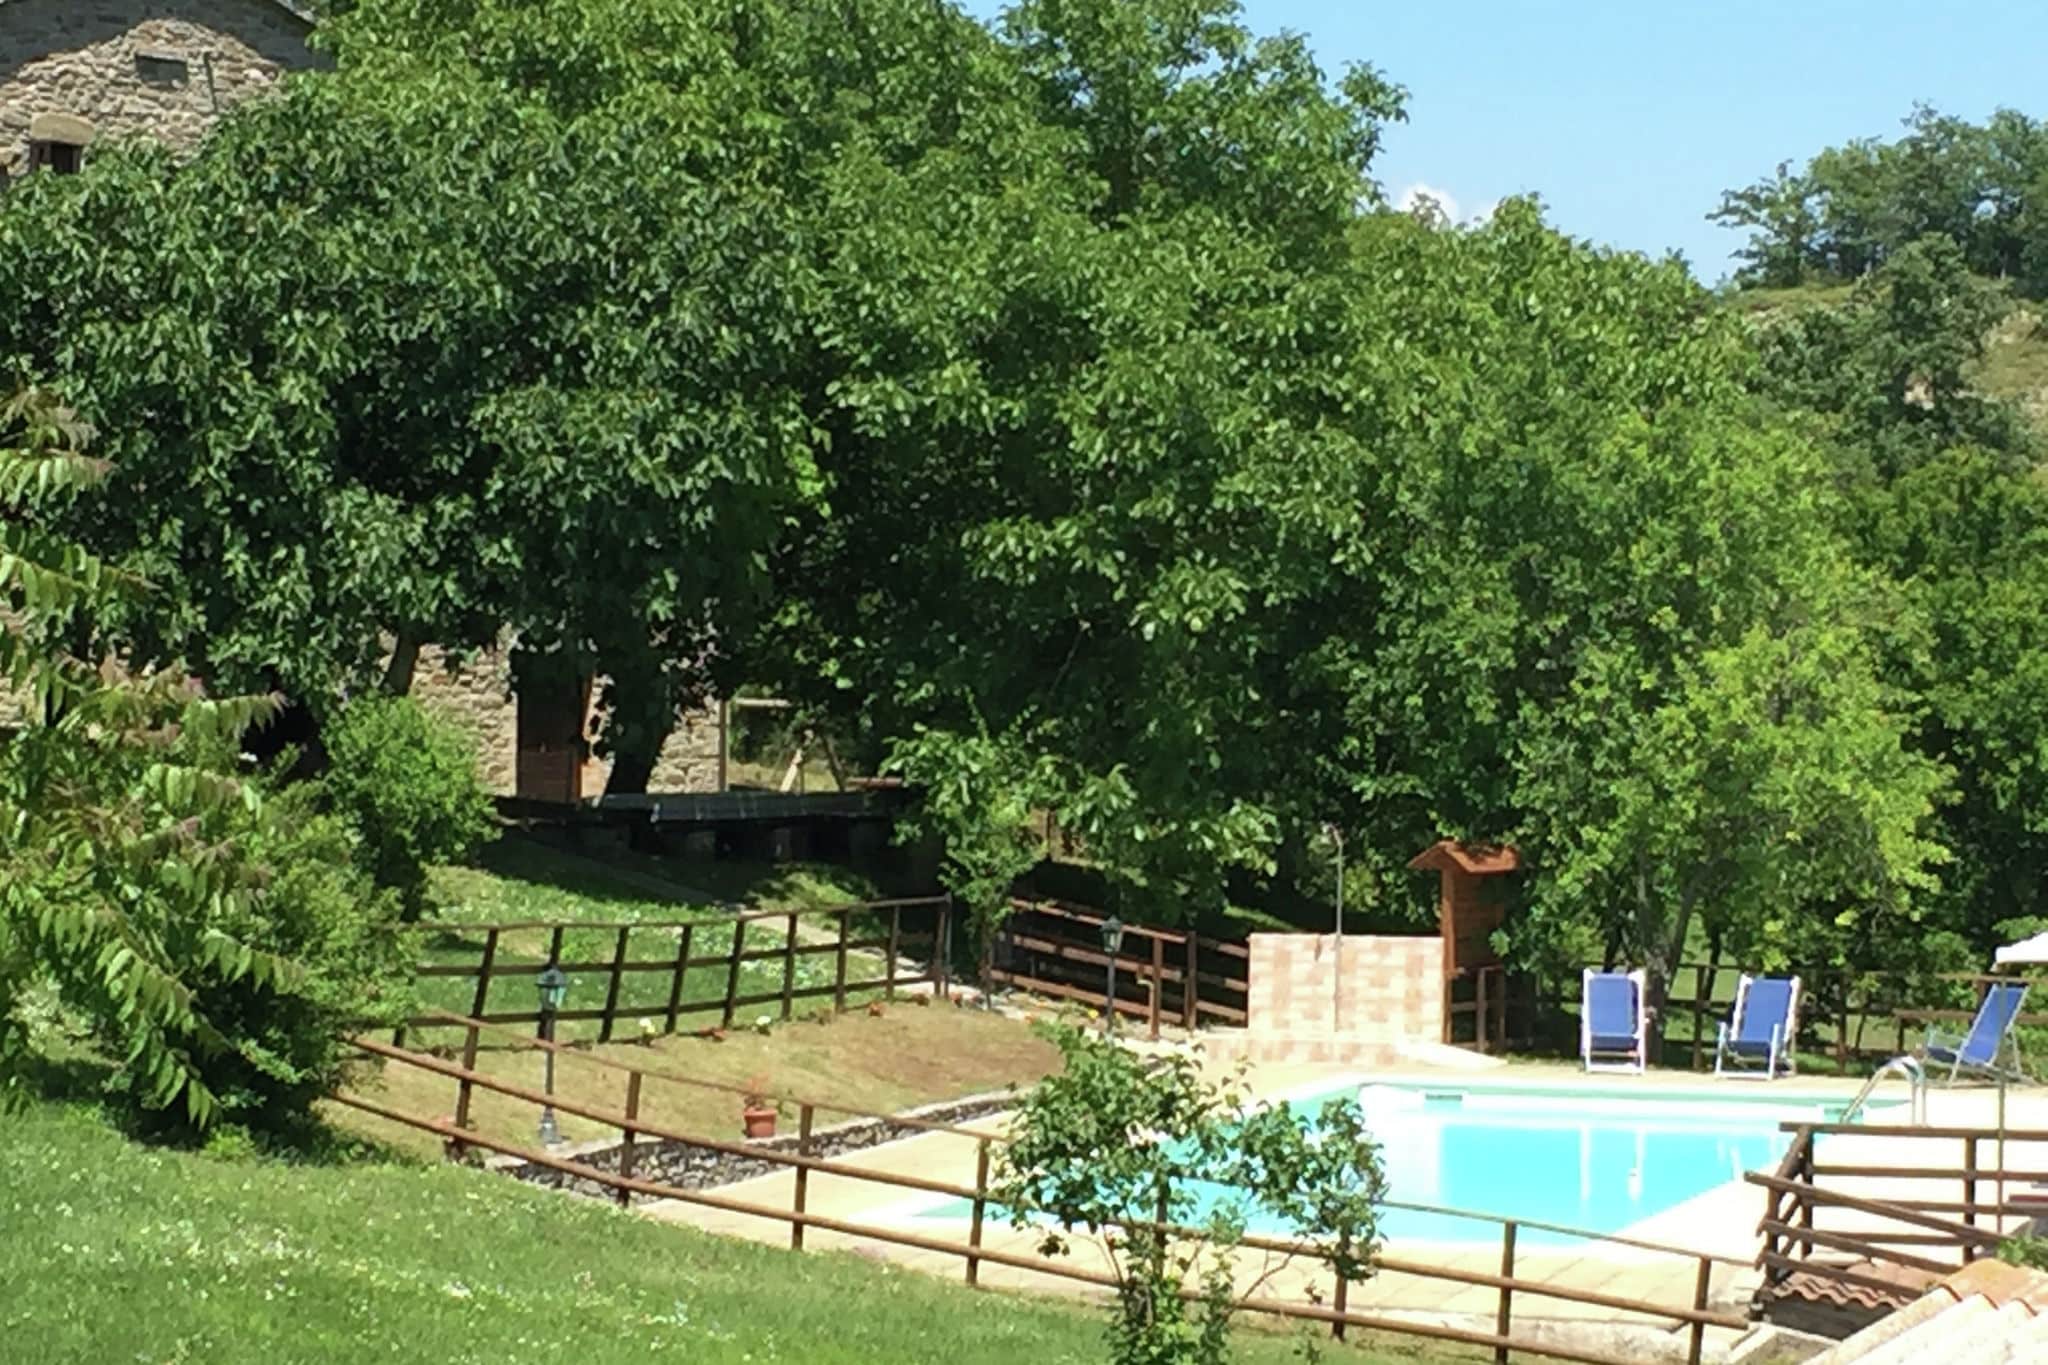 Farmhouse in Apecchio with Swimming Pool, Patio, Garden, BBQ